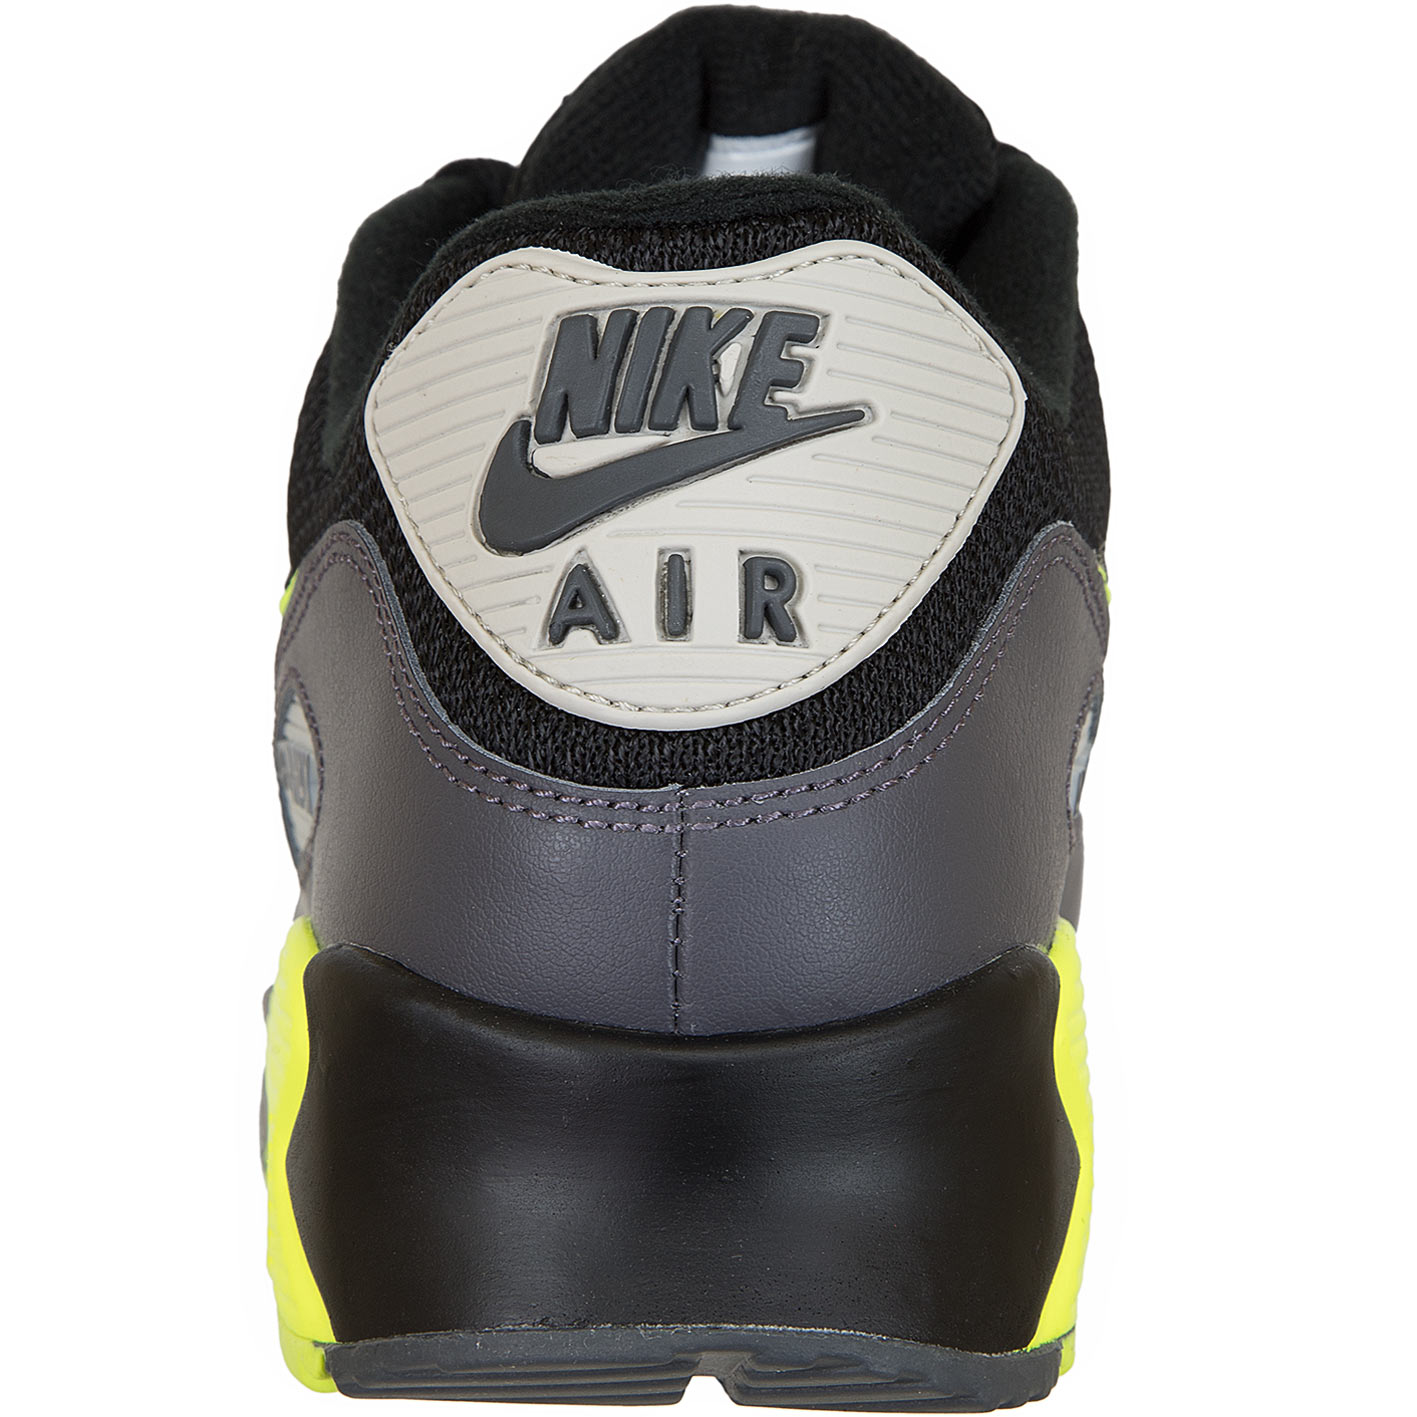 ☆ Nike Sneaker Air Max 90 Essential grau/schwarz/gelb - hier bestellen!